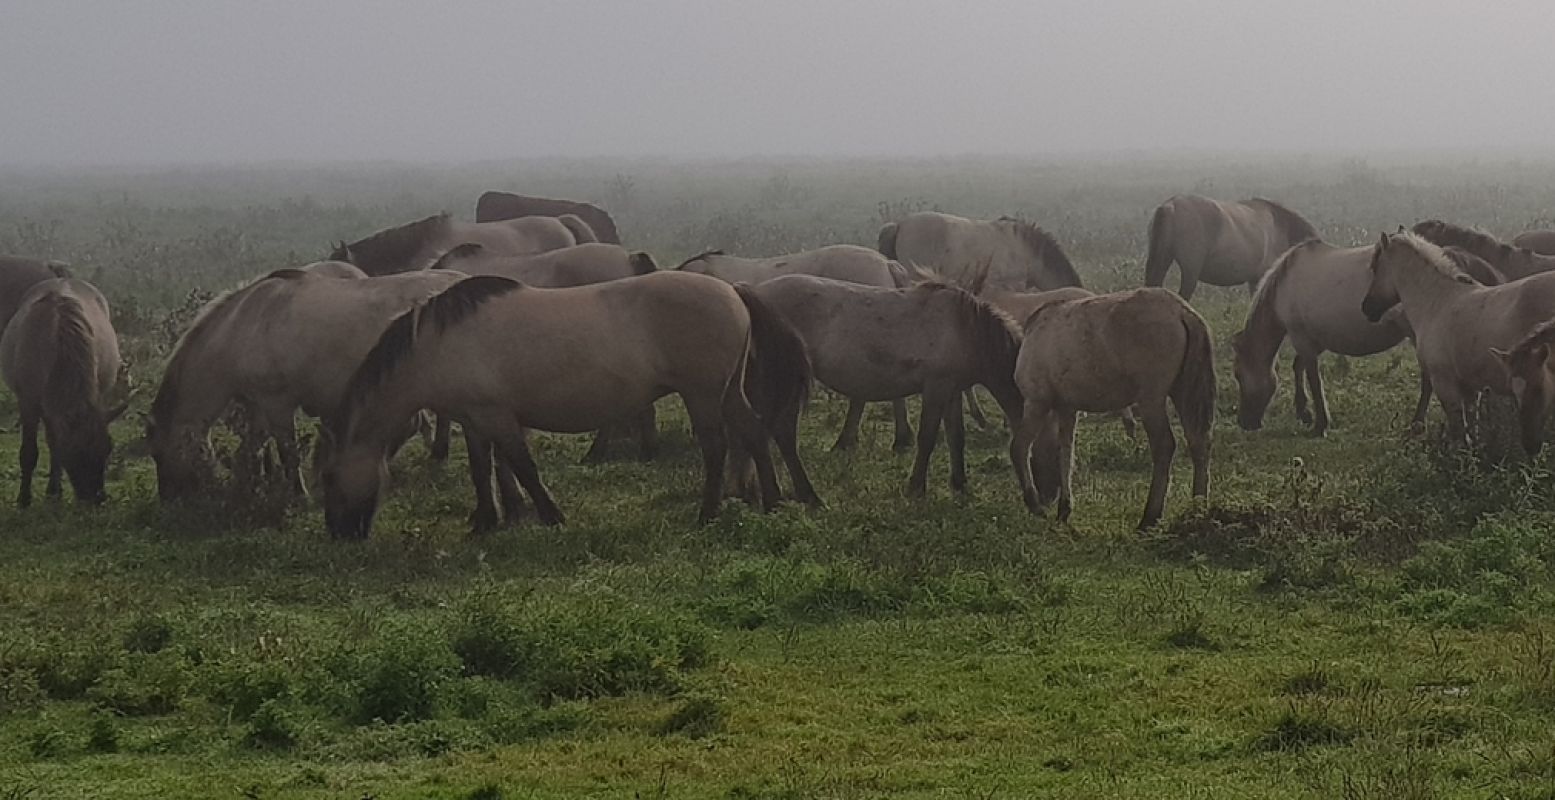 Konikpaarden in de mist. In Nationaal Park Lauwersmeer kun je naast deze wilde paarden ook Schotse hooglanders tegenkomen. Foto: DagjeWeg.NL © Tonny van Oosten